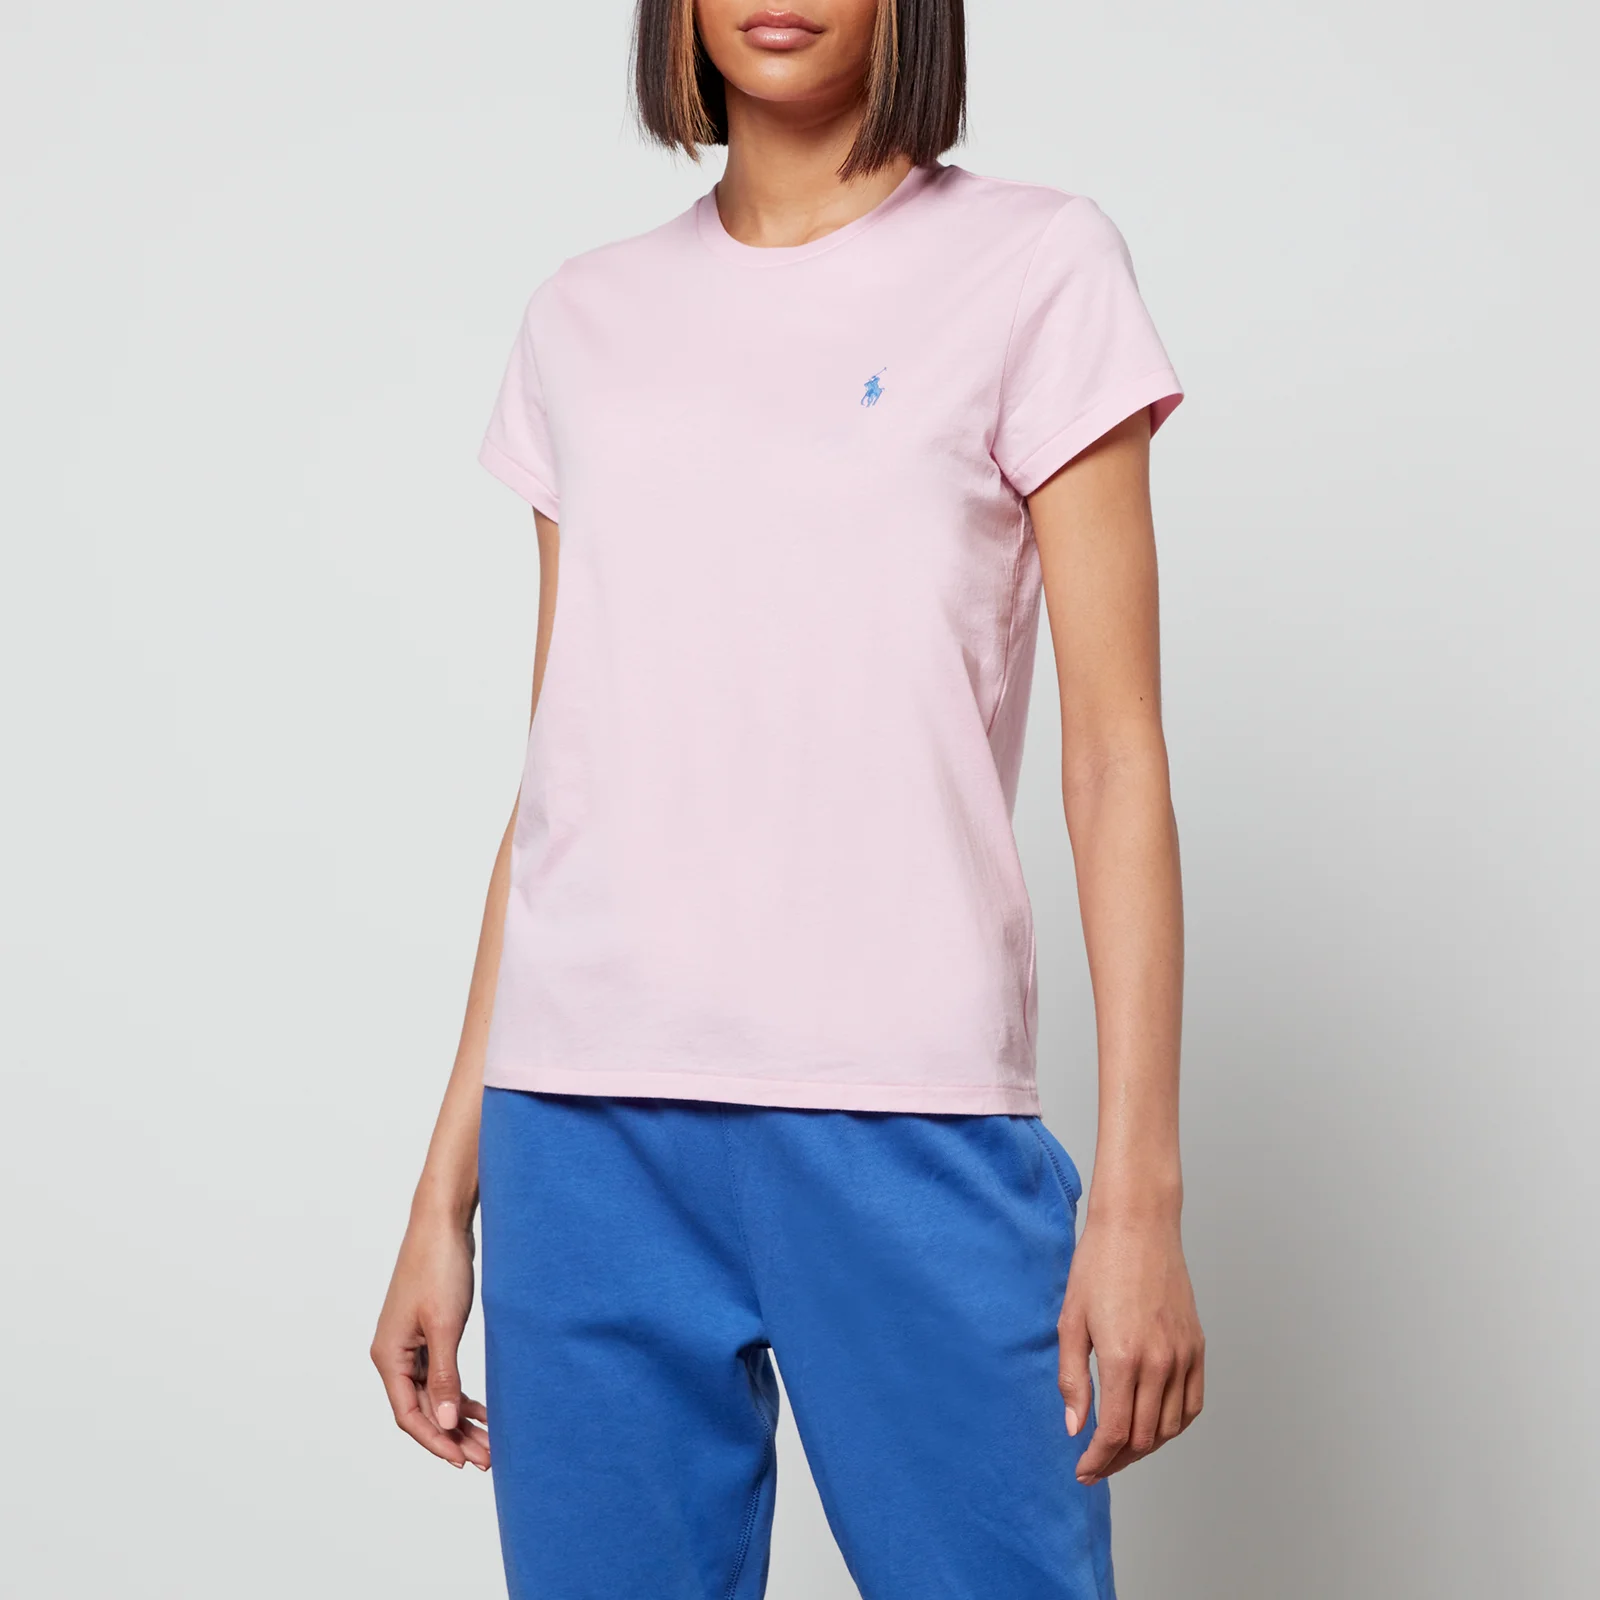 Polo Ralph Lauren Women's Small Pp T-Shirt - Carmel Pink Image 1